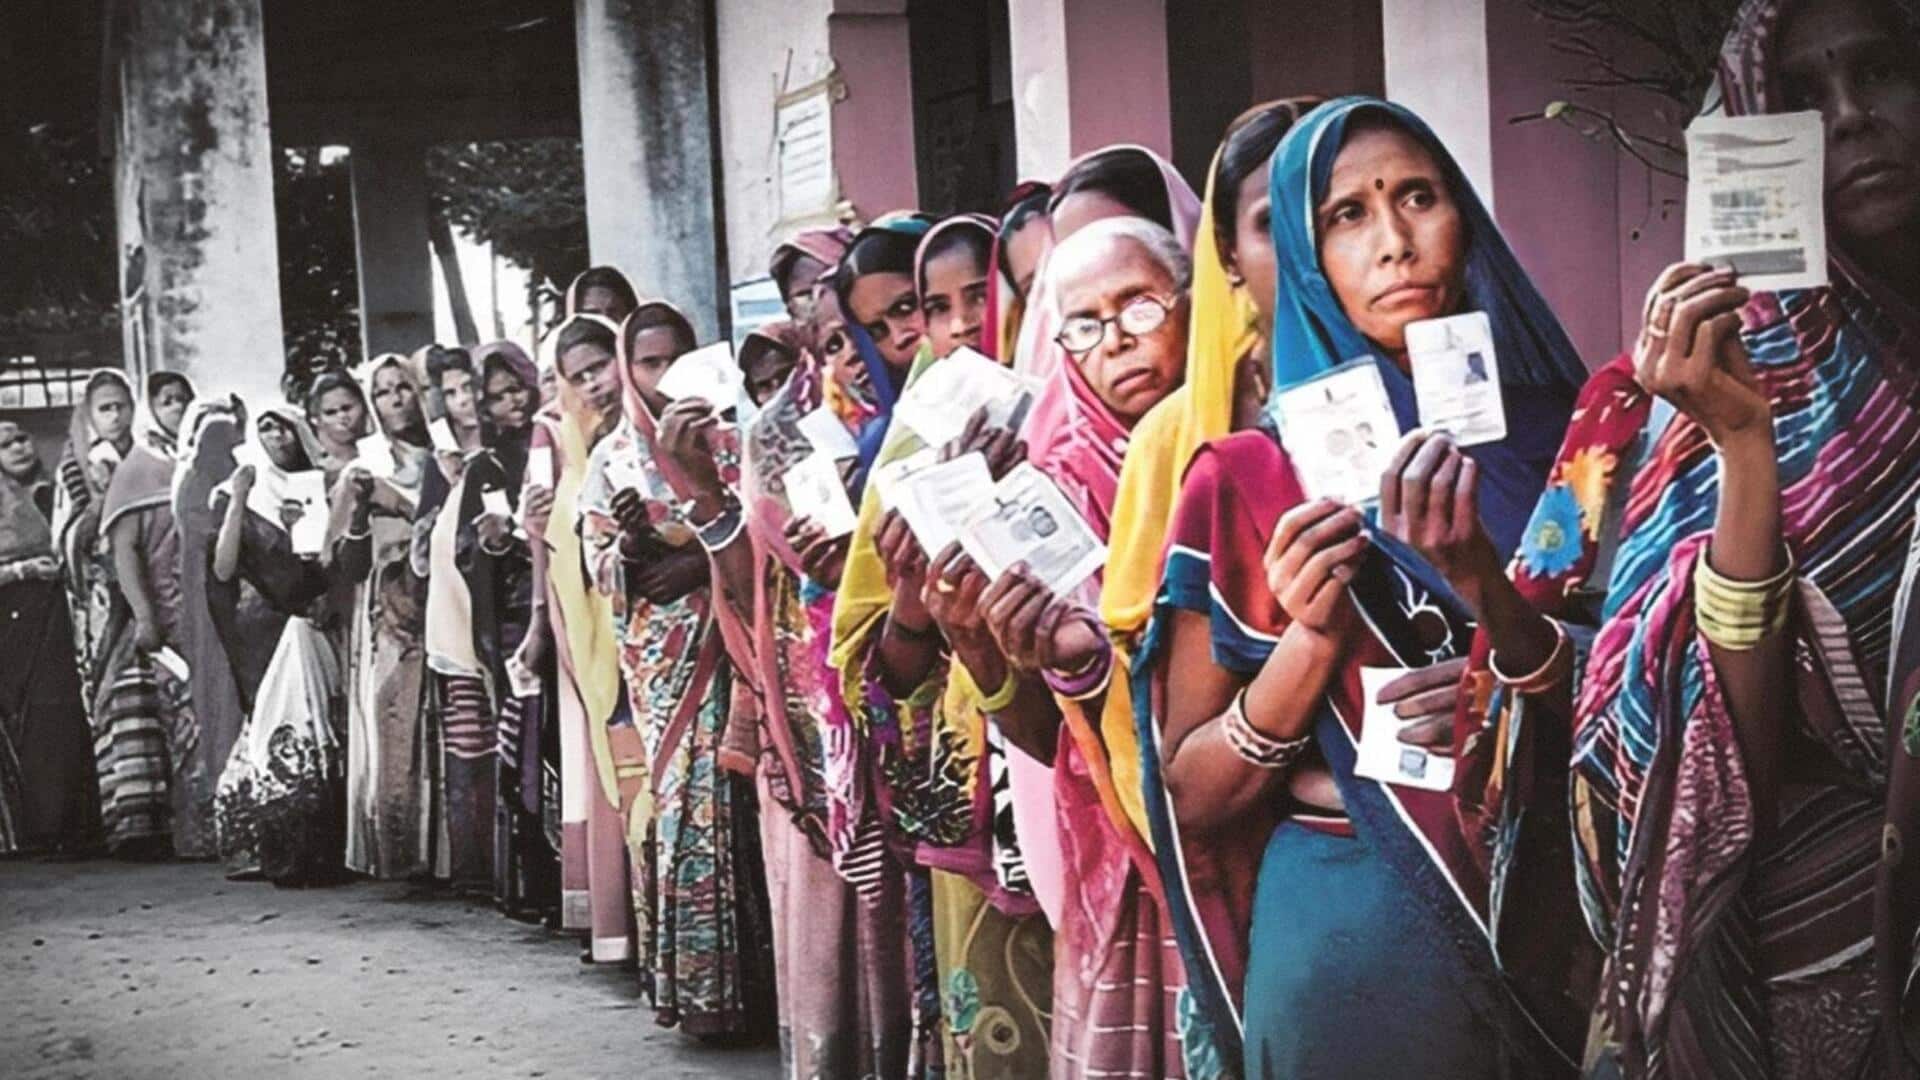 मध्य प्रदेश: मुरैना के दिमनी में मतदान के दौरान पथराव और गोलीबारी, 1 घायल